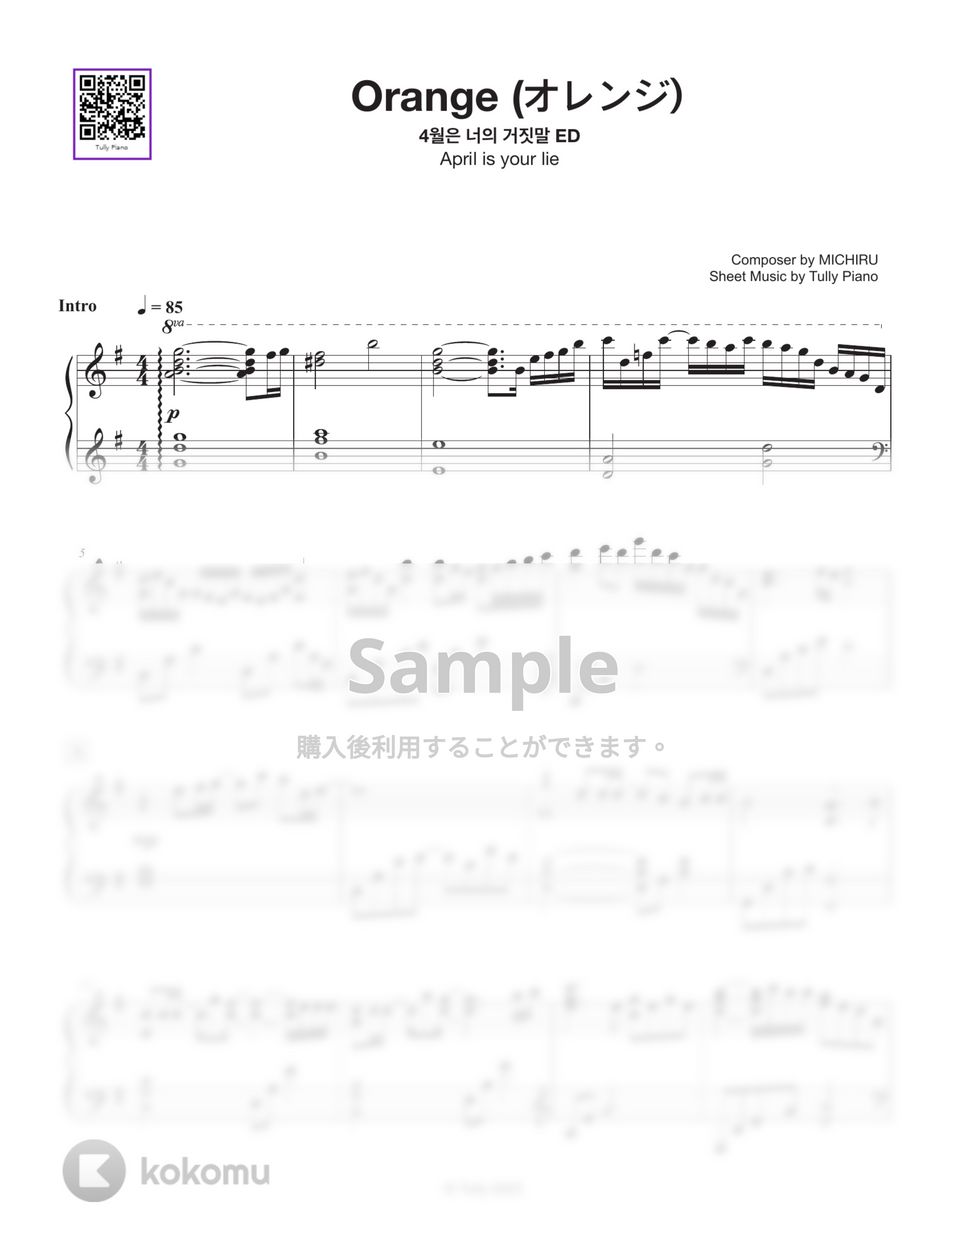 アニメ『四月は君の嘘』ED - オレンジ (TVサイズ) (Full ver.) by Tully Piano